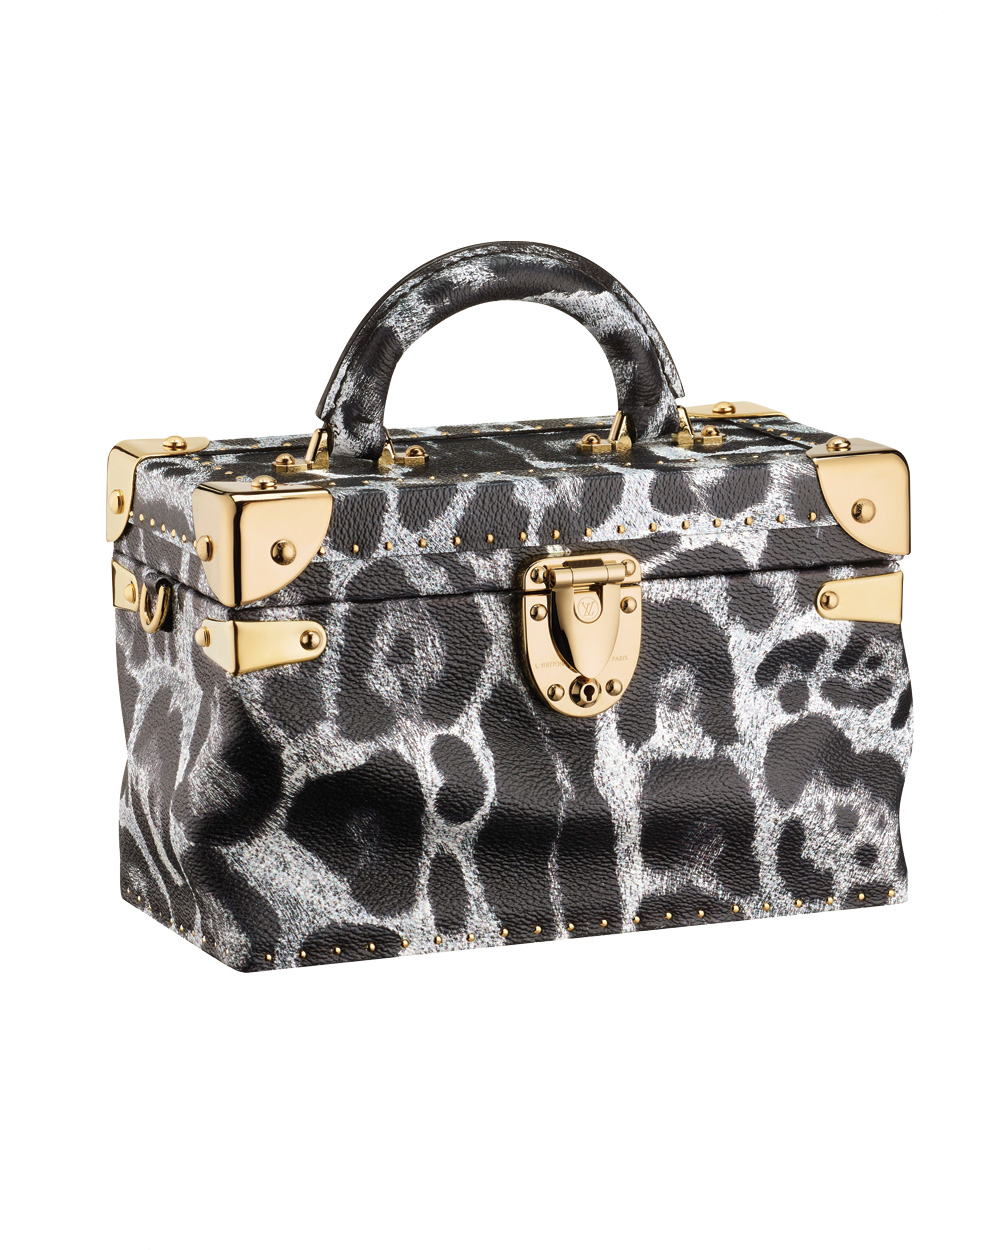 Louis Vuitton bag, $10,400